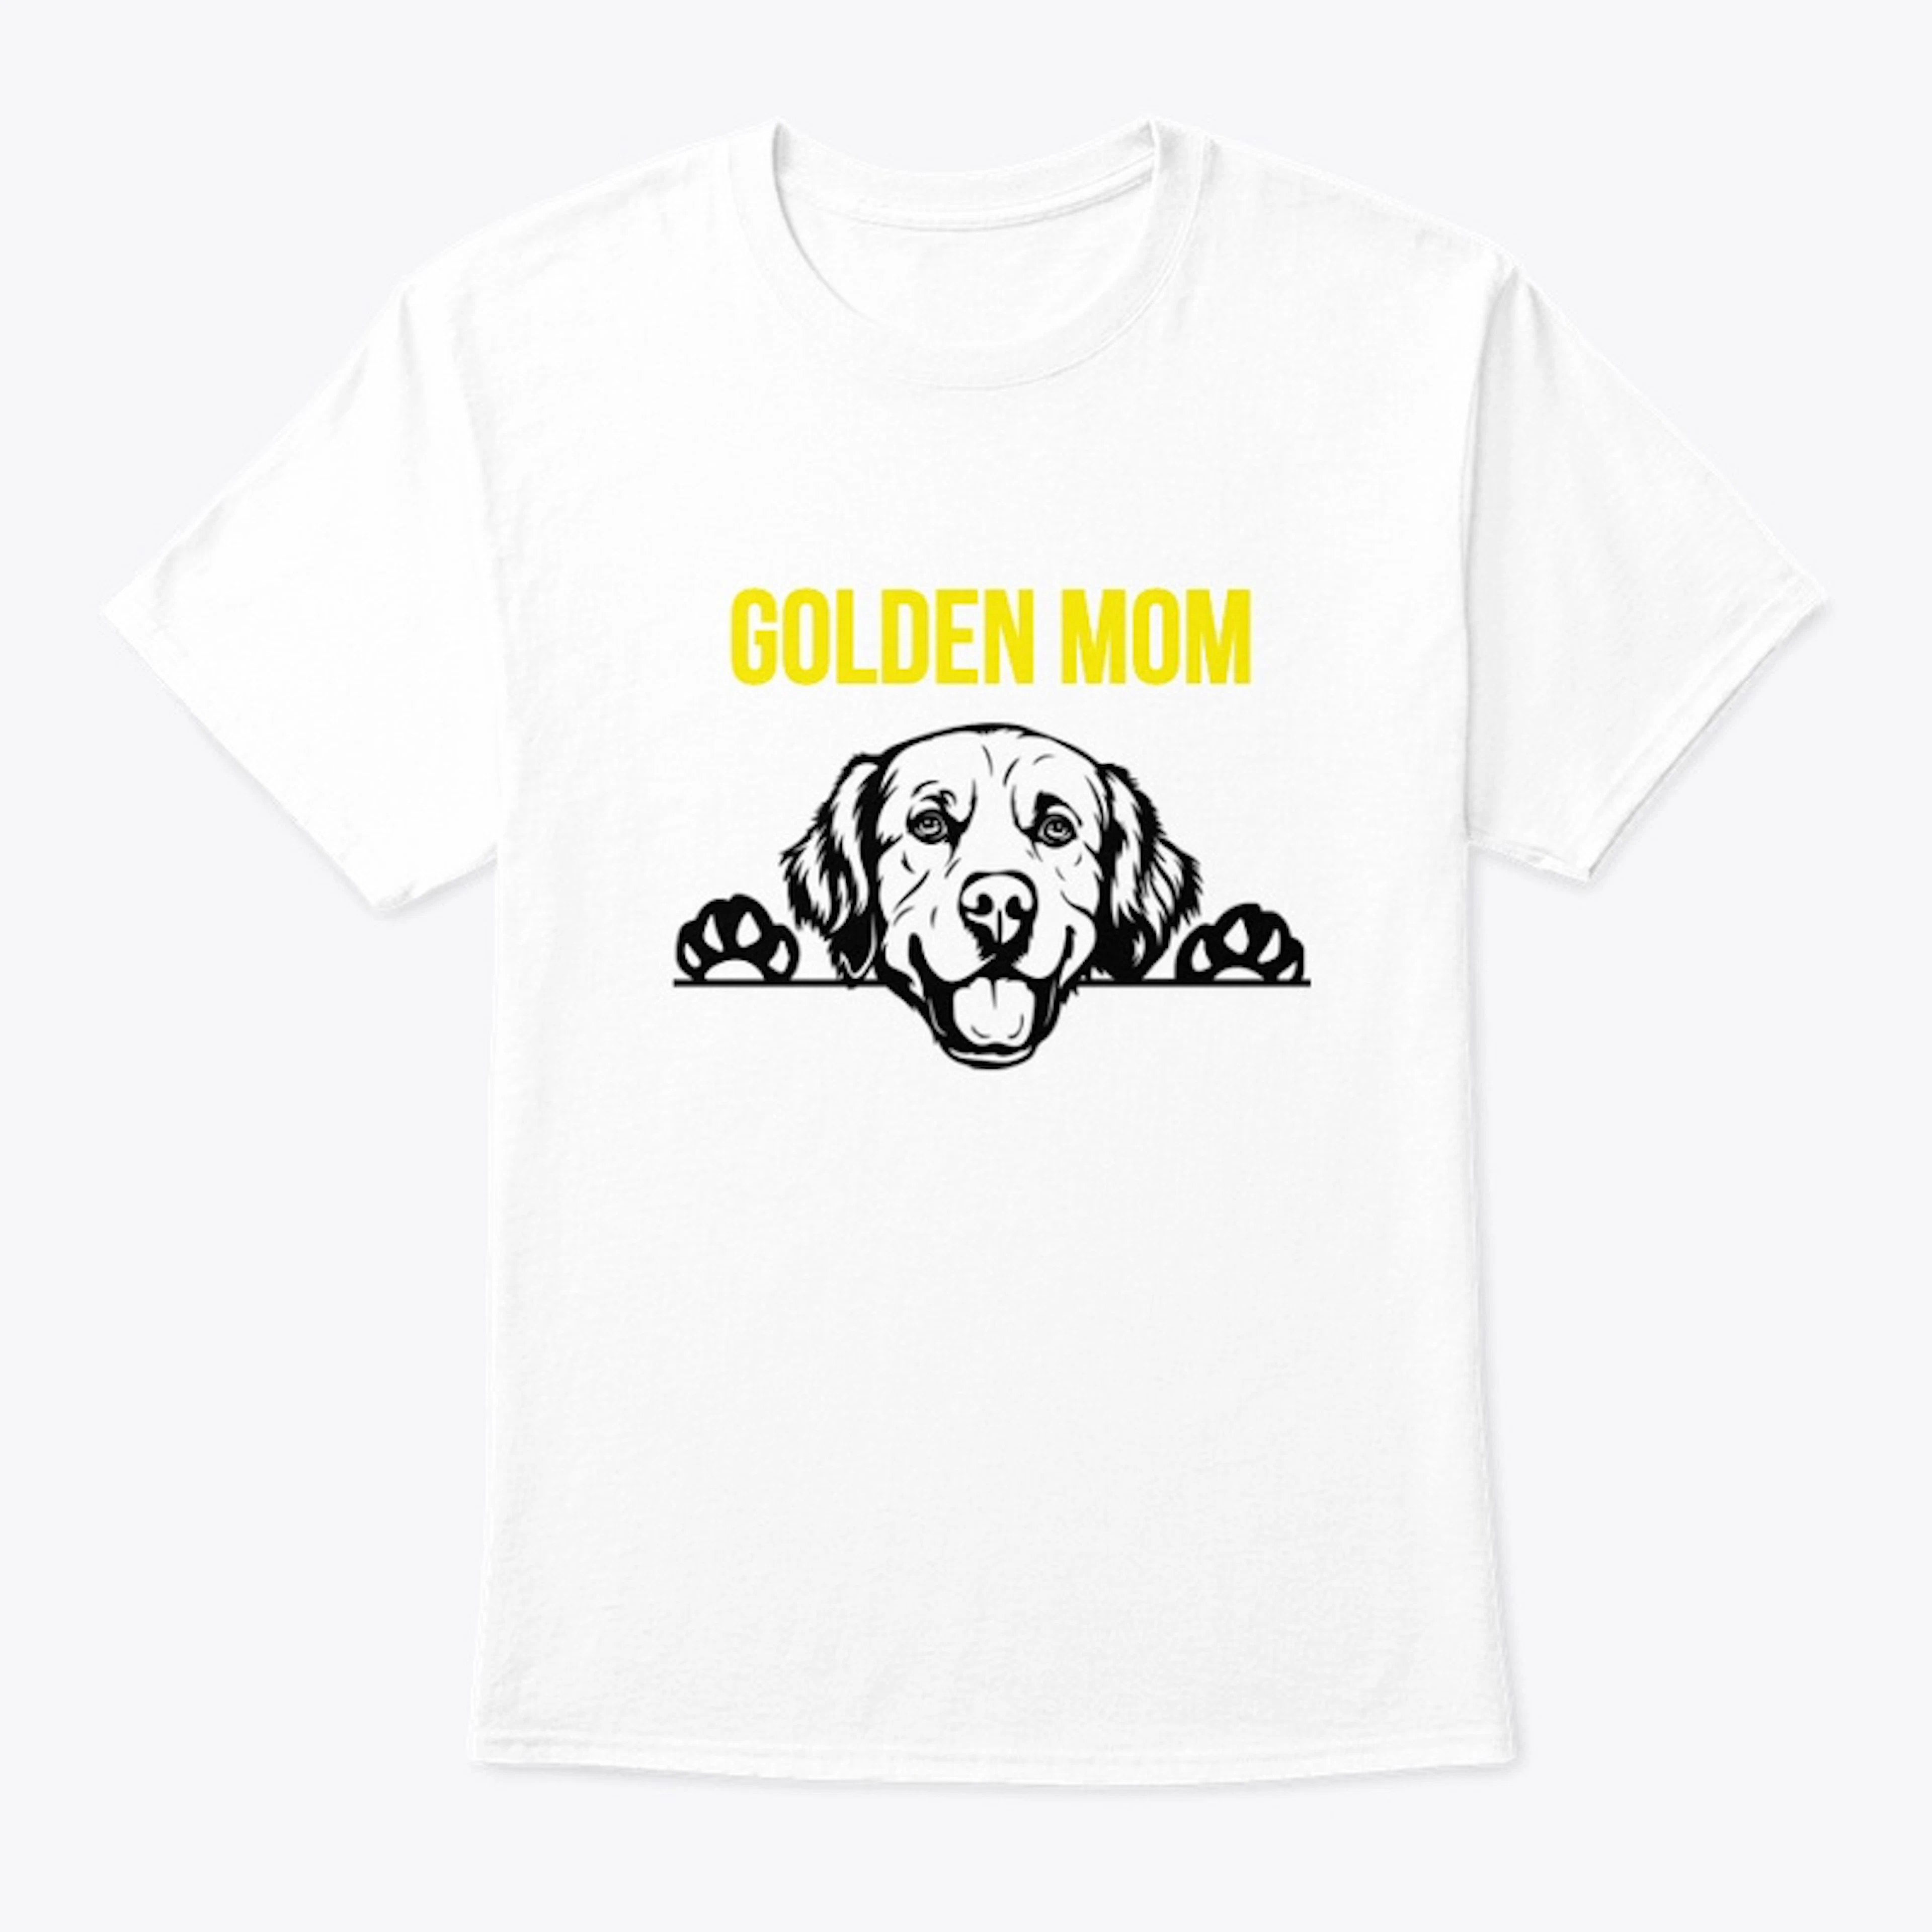 GOLDEN MOM